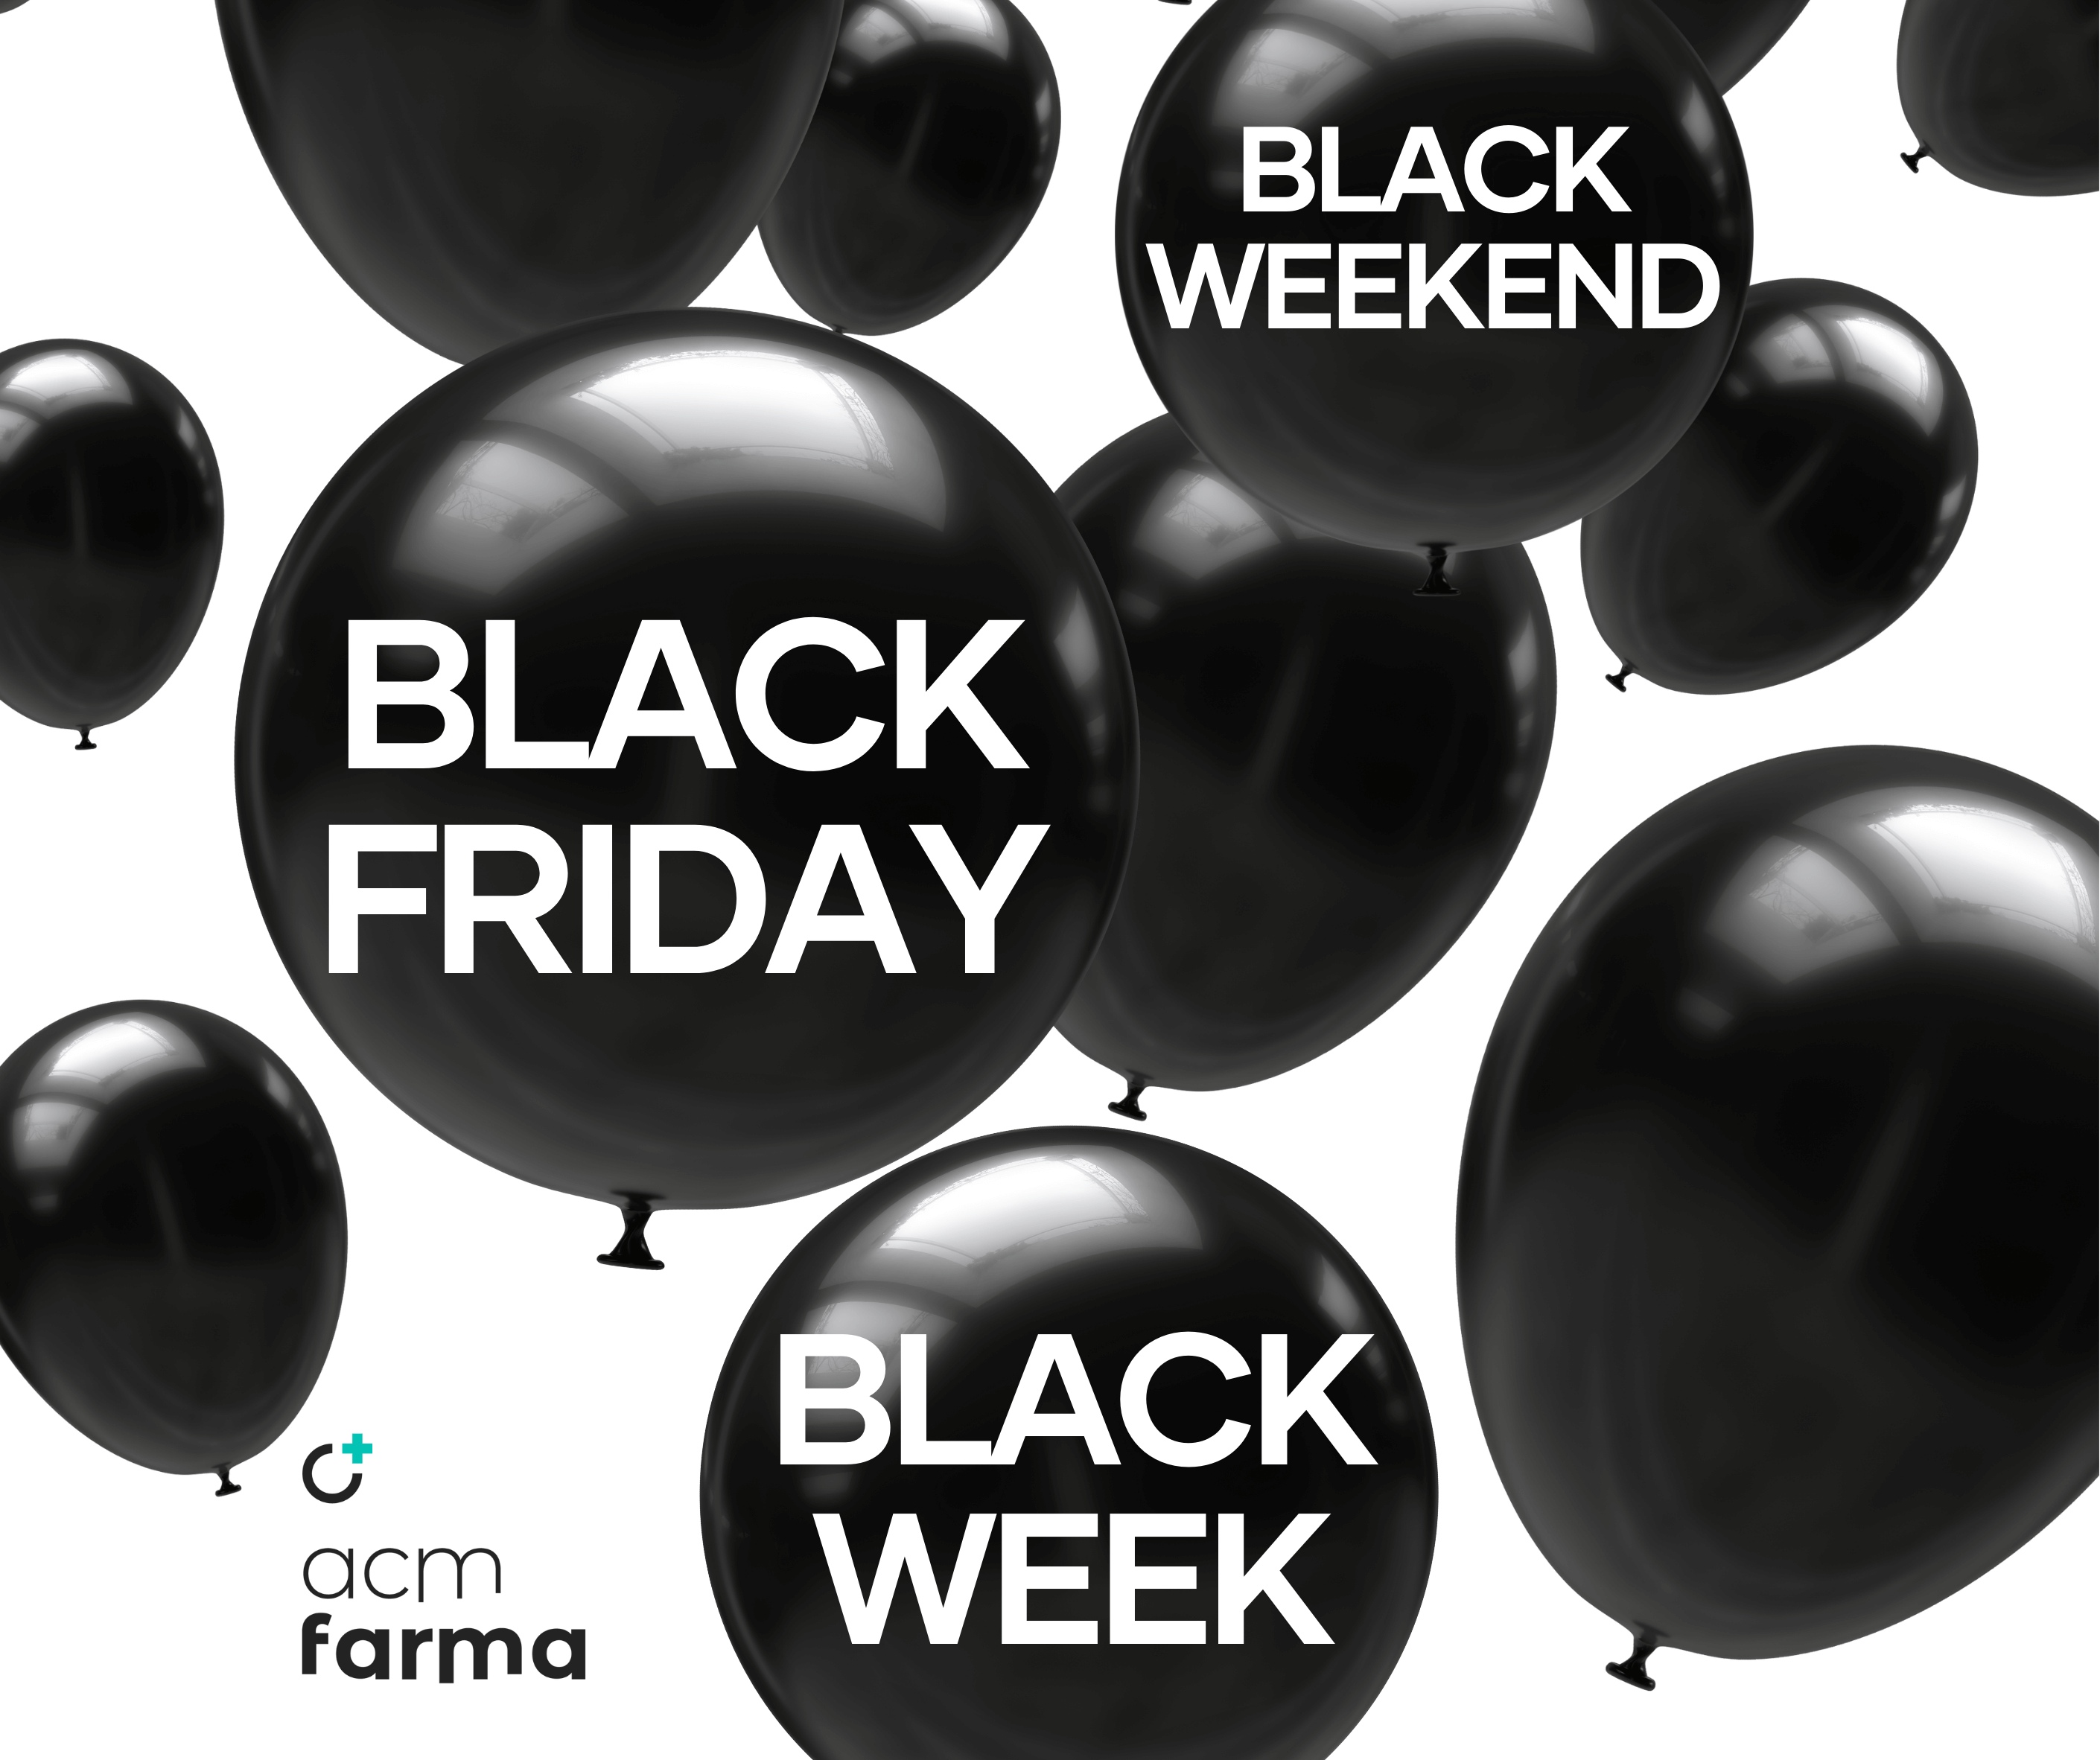 La campaña de Black Friday en tu farmacia